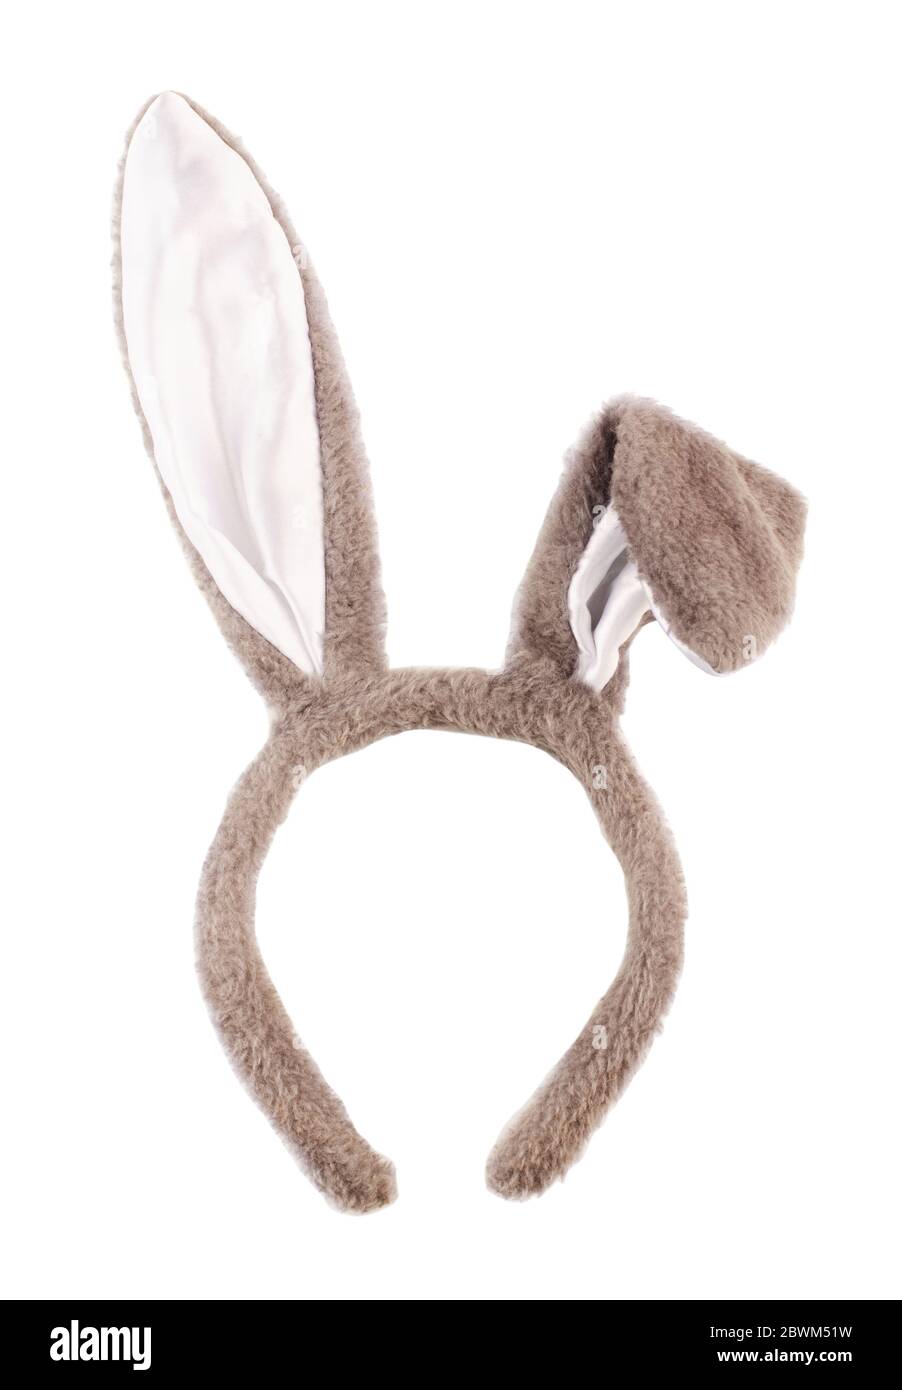 Pasqua coniglio grigio fancy dress orecchie isolato su uno sfondo bianco Foto Stock